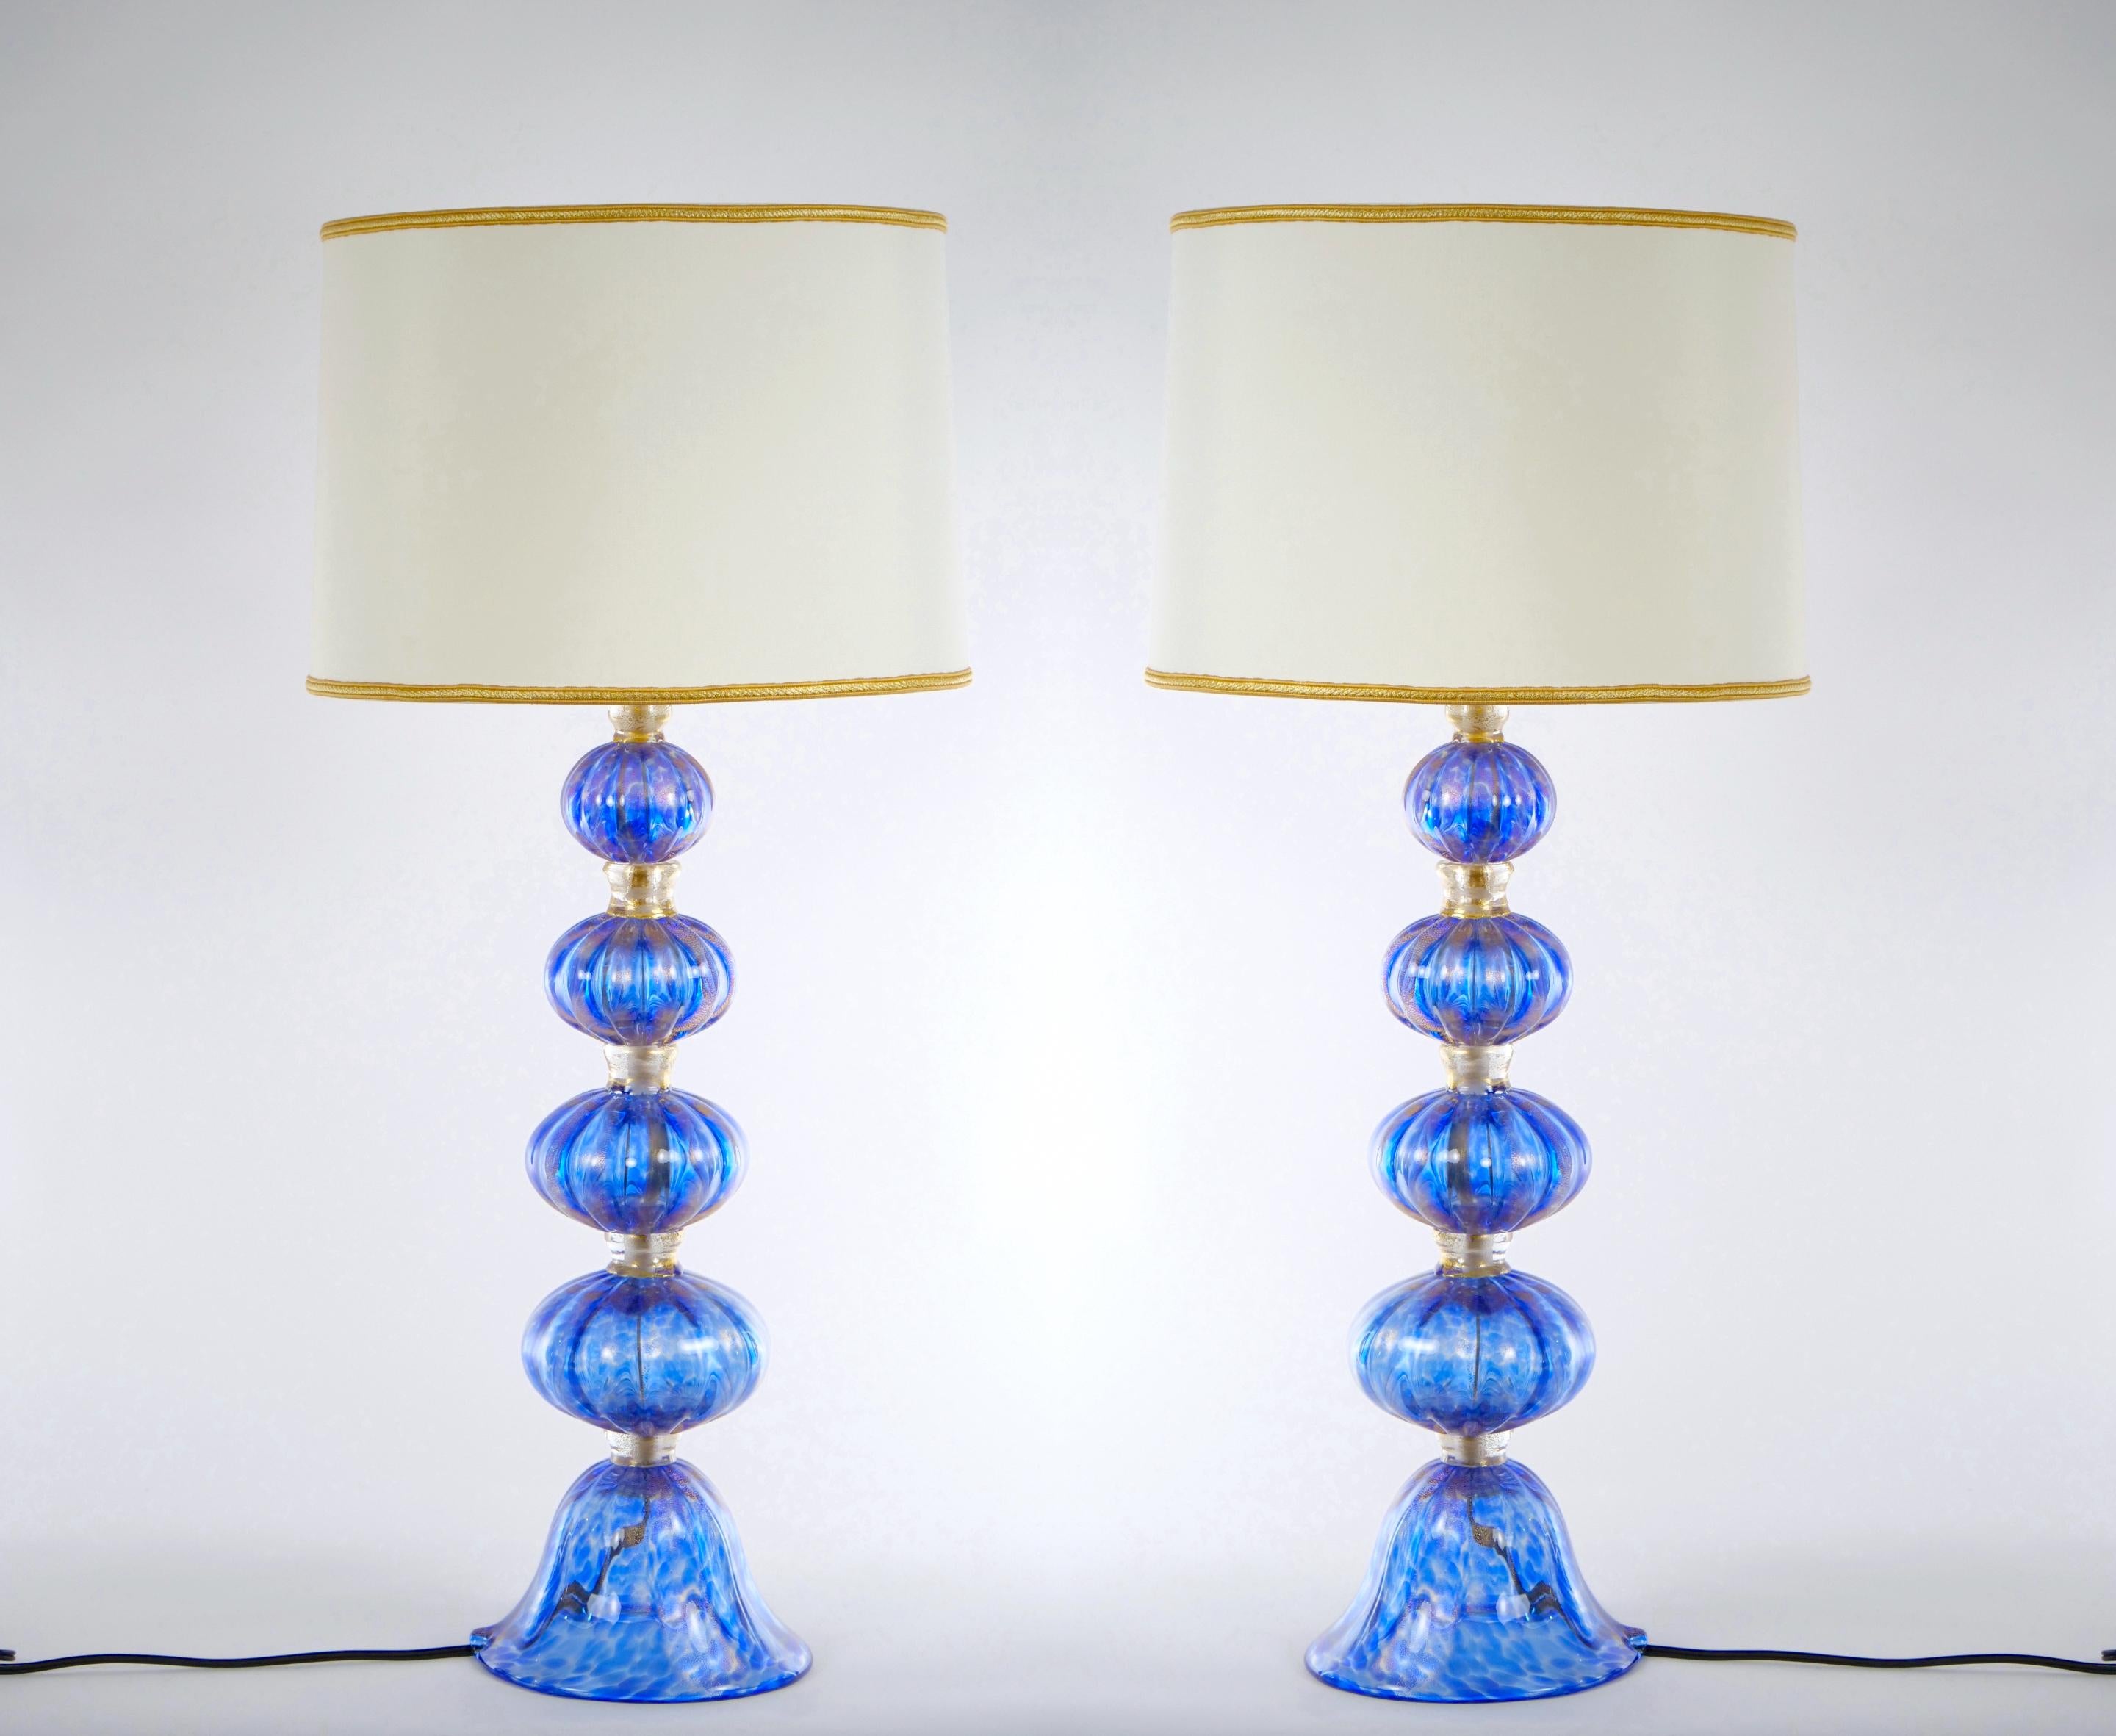 Ende des 20. Jahrhunderts Murano, venezianischen mundgeblasenem Glas und verziert mit Goldflecken Design Details Paar Tischlampen. Jede Leuchte besteht aus vier mundgeblasenen Teilen, die von Avventurina-Glasringen zusammengehalten werden, die mit